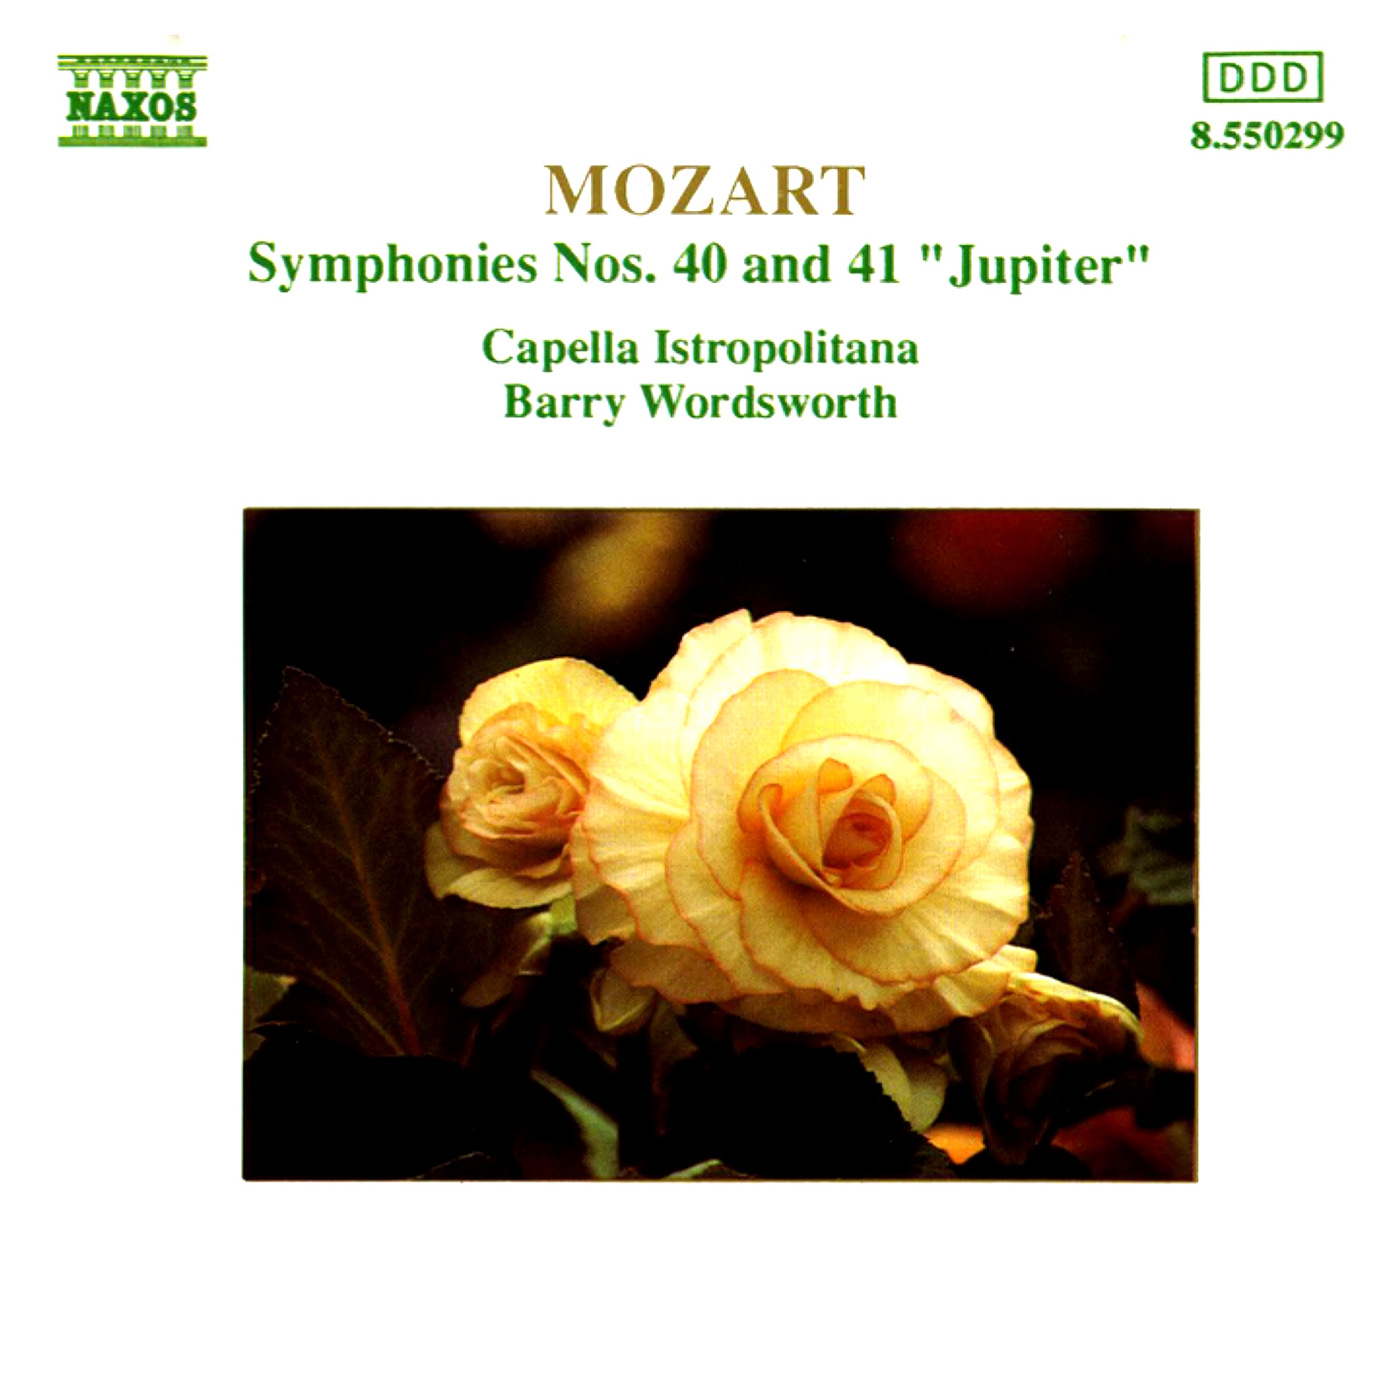 Symphony No. 41 in C Major, K. 551, "Jupiter":III. Menuetto: Allegretto